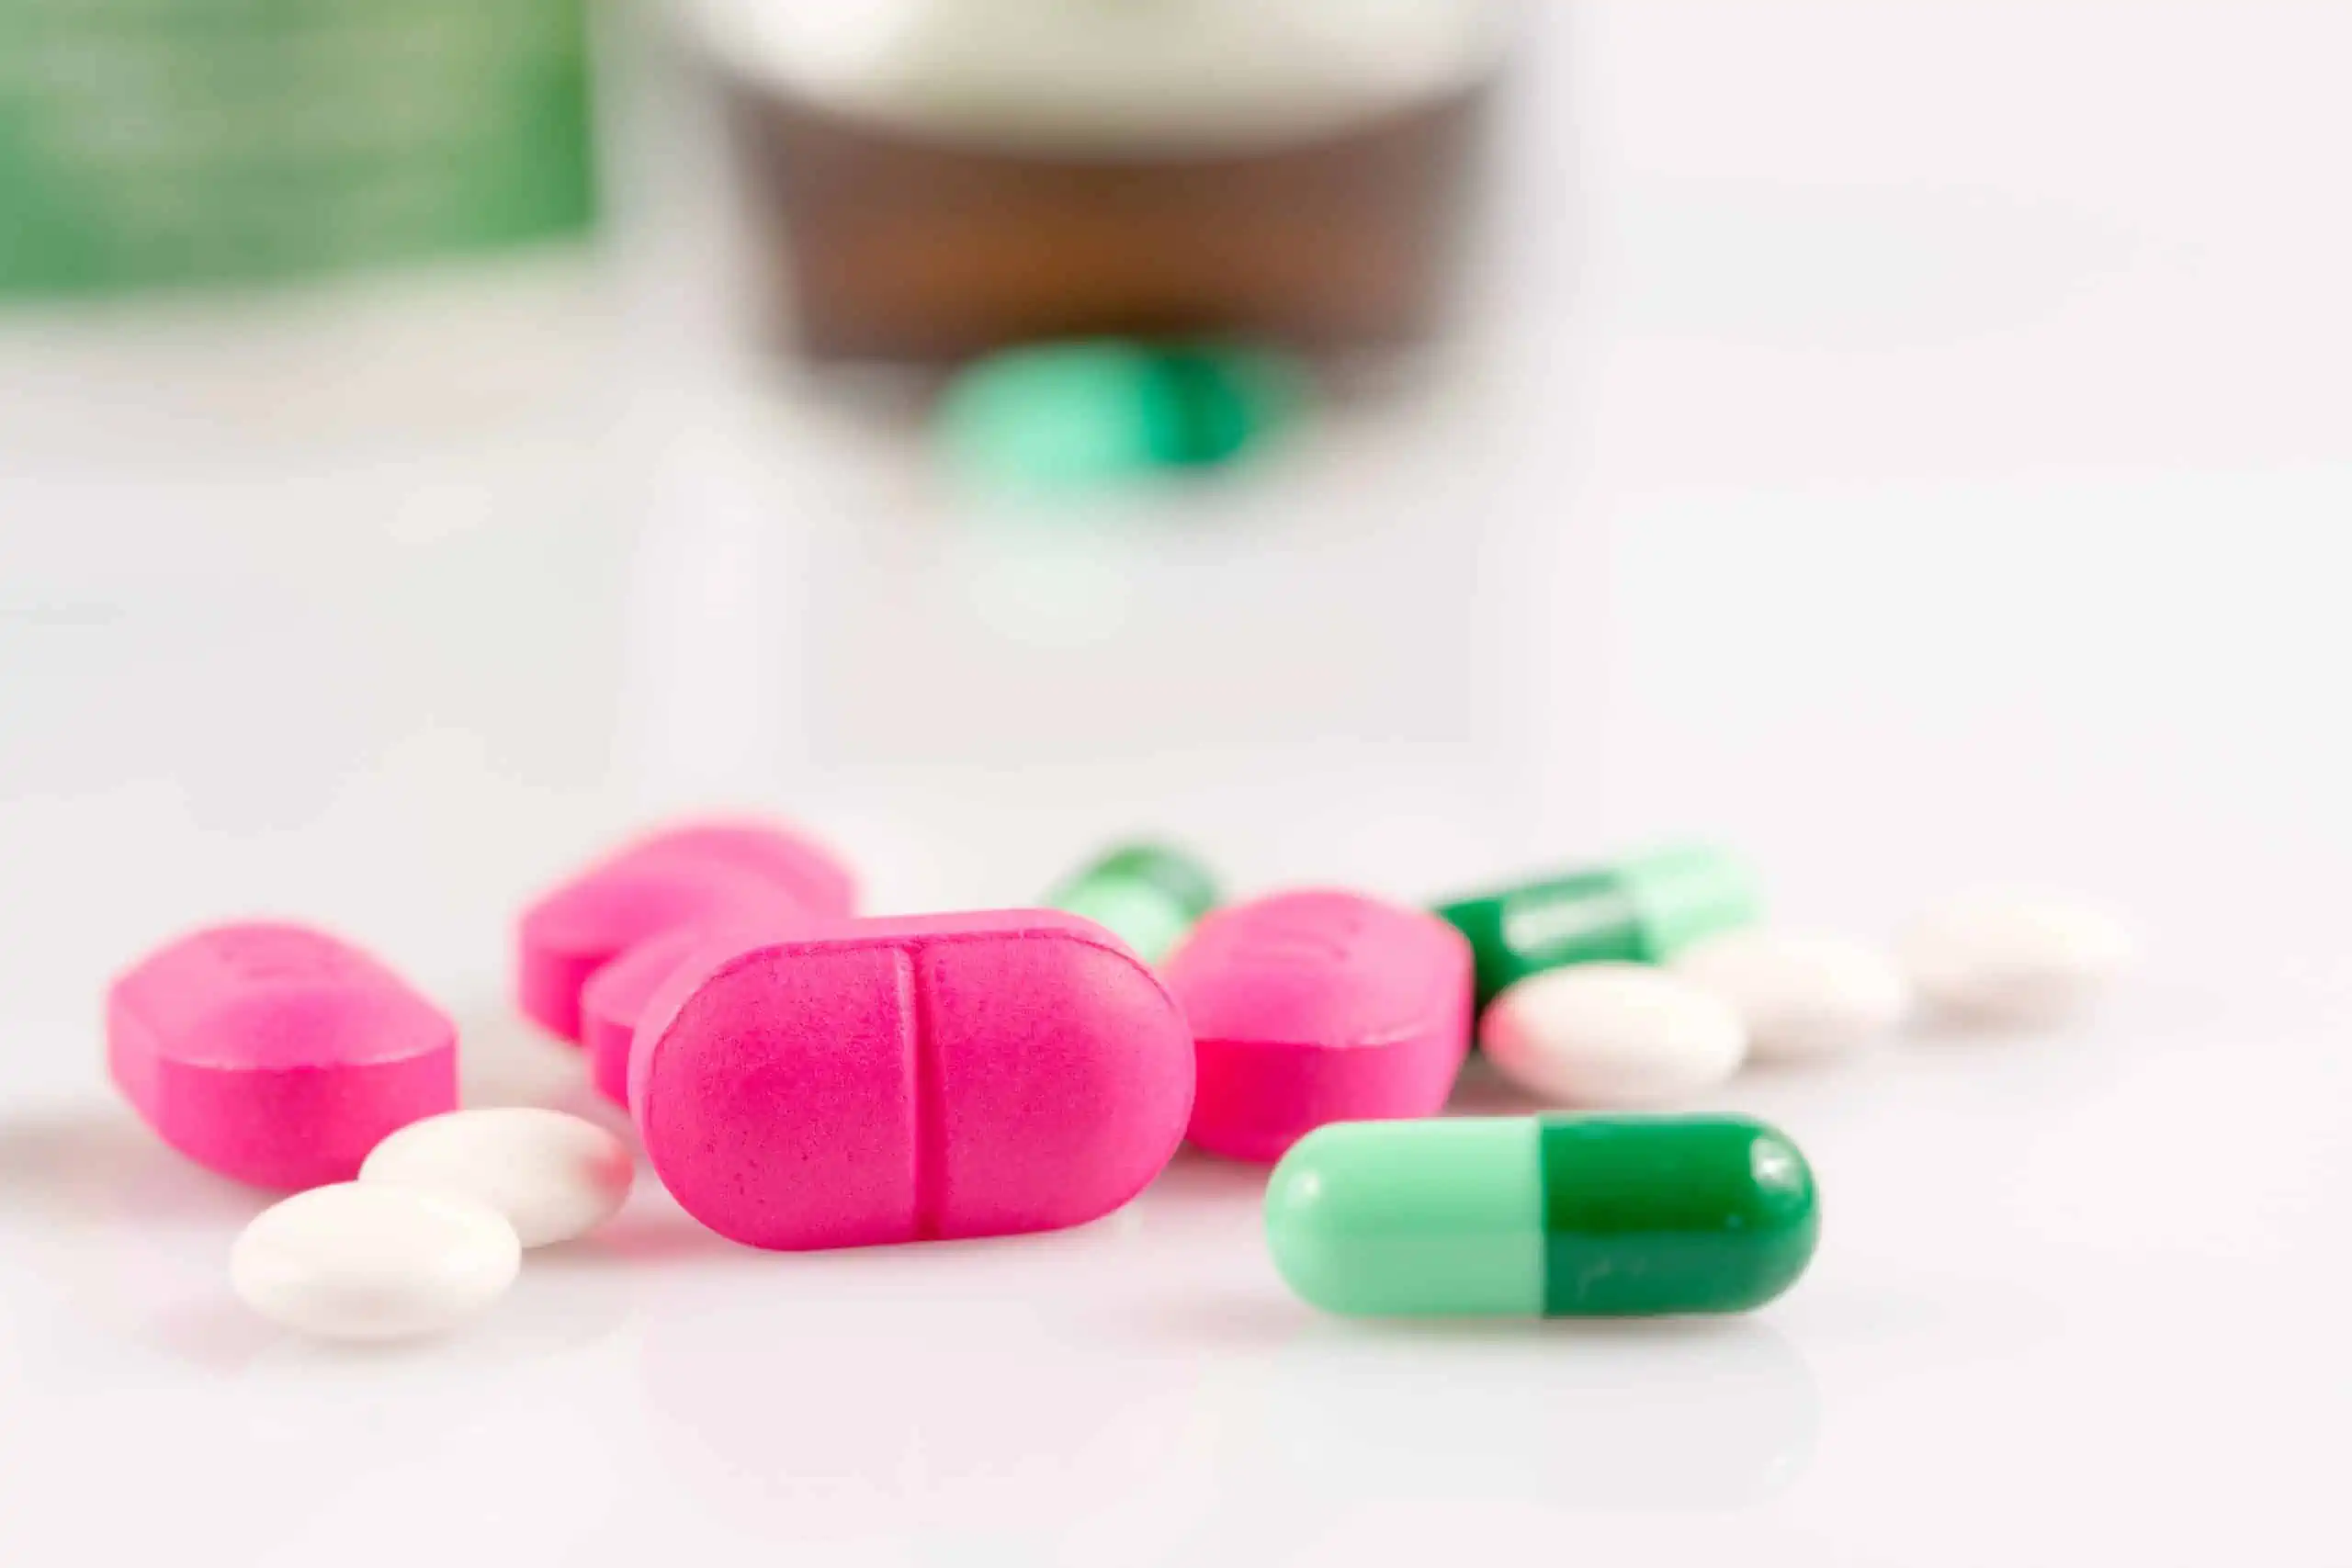 ibuprofen alkaloid - djelovanje, nuspojave, cijena, iskustva